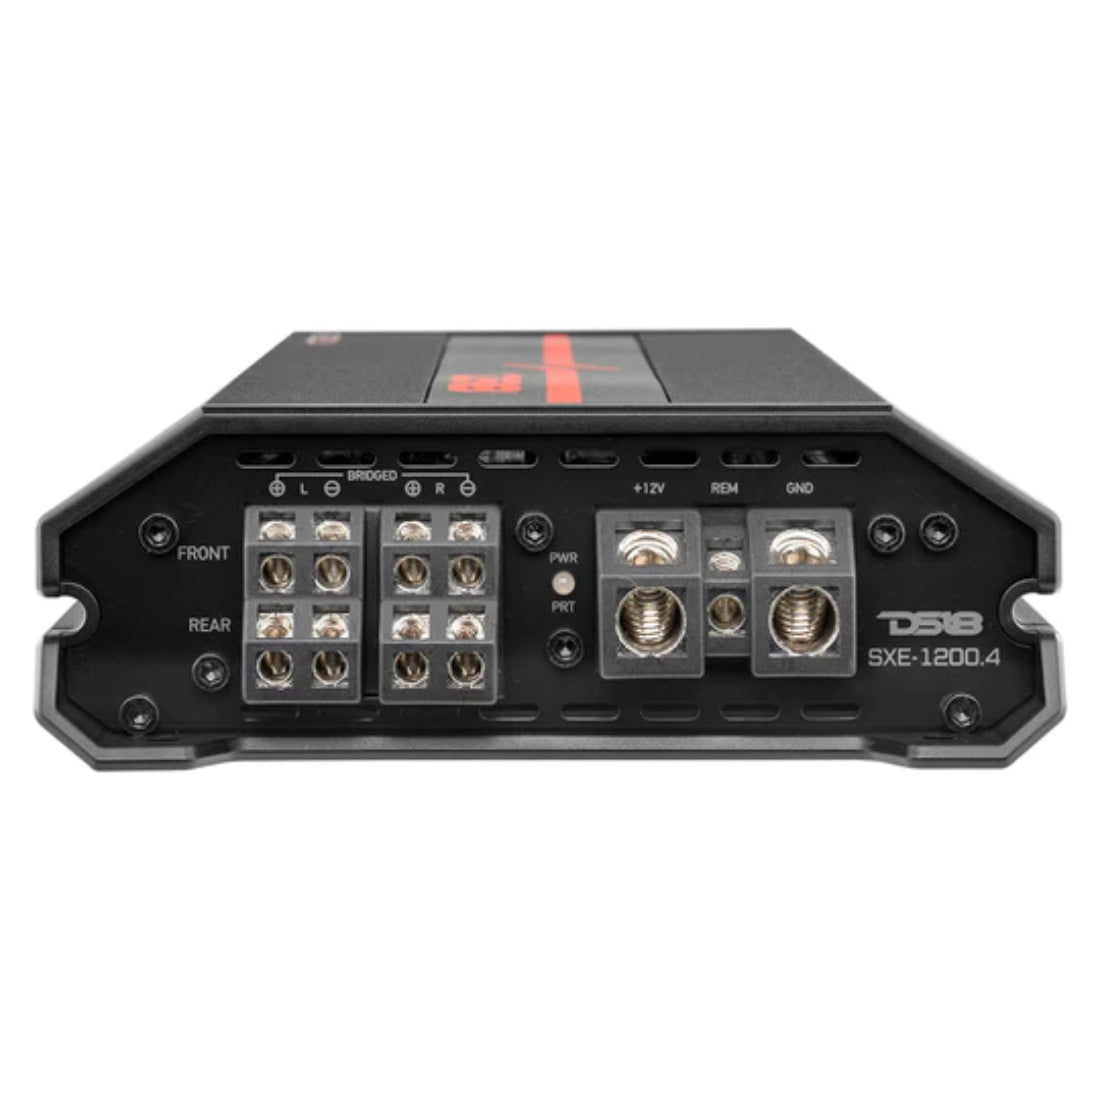 DS18 SXE-1200.4/BK 1200W Peak 4-Channel Class-A/B Full-Range Car Audio Amplifier